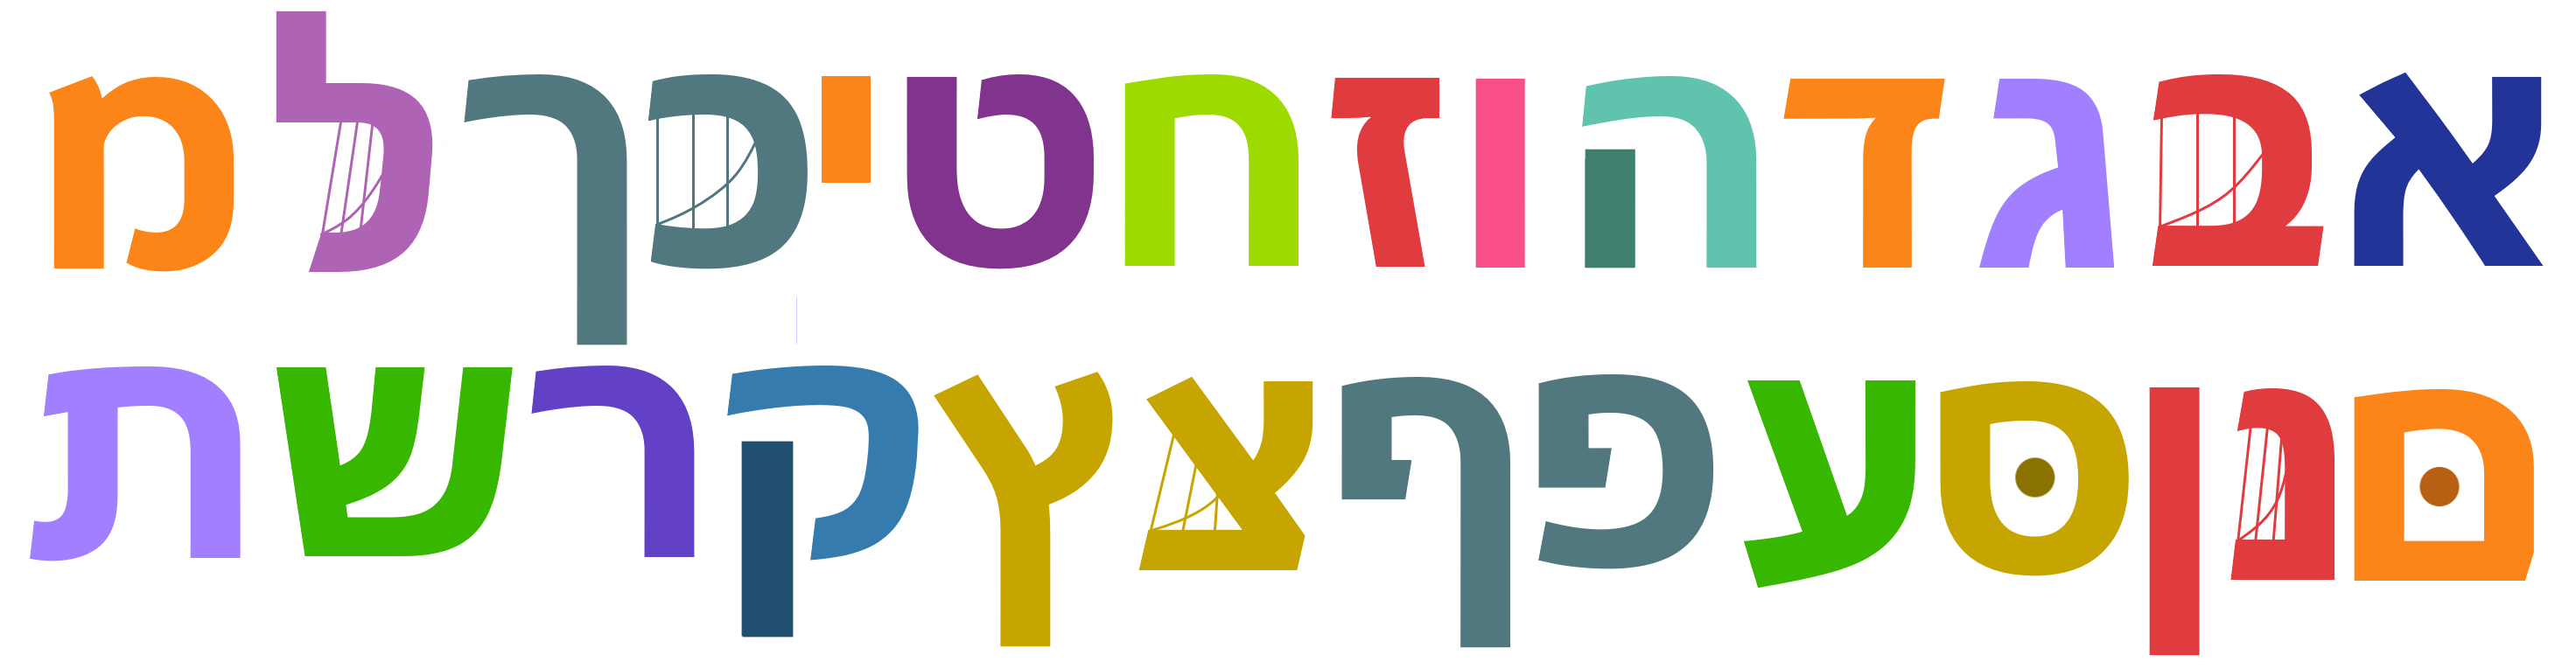 IHHOS' TVOkids Cast - Greek Alphabet by OreoAndEeyore on DeviantArt